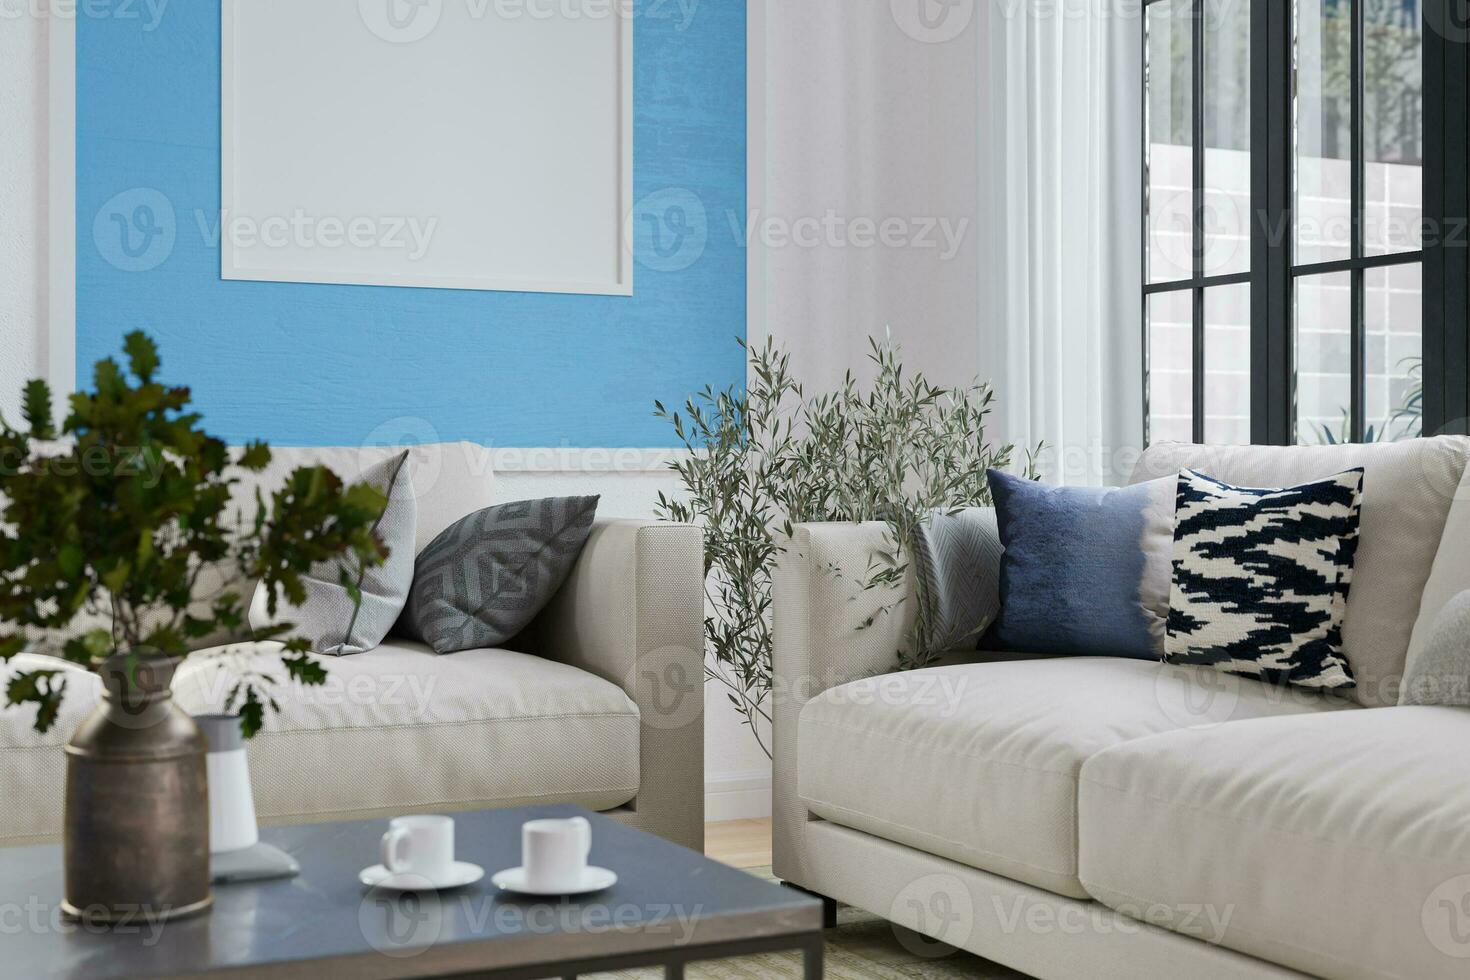 pur Naturel plante dans une vase sur le café tableau, Contexte mur peint avec blanc et ciel bleu, oreiller mensonge sur le canapé. 3d le rendu photo